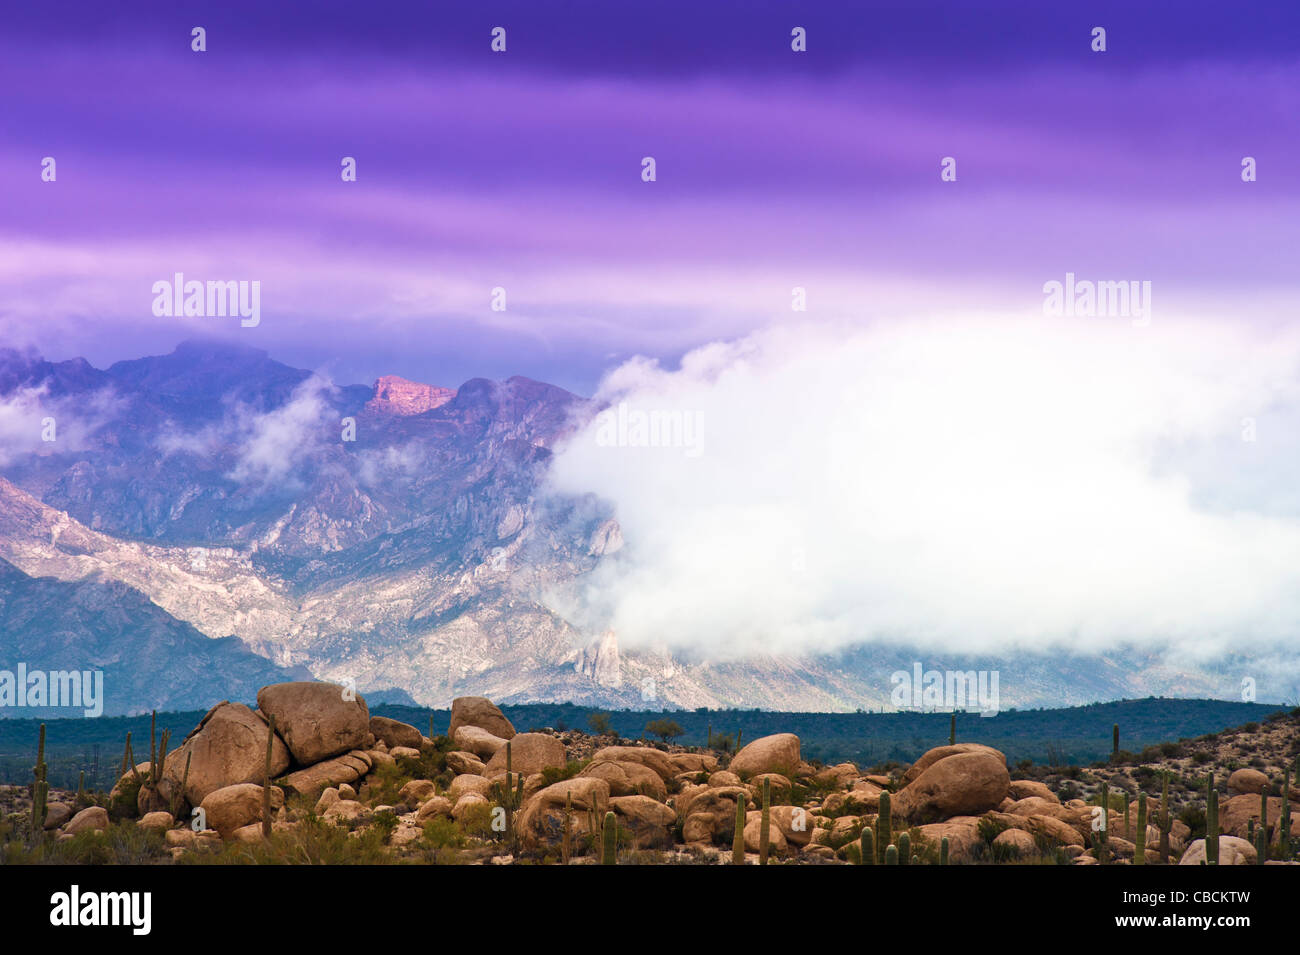 Niedrige Wolken von vorbeifahrenden Sturm eröffnen den Blick auf die Tortilla Berge östlich von Florenz, AZ. Tonto NAT ' l Wald. Stockfoto